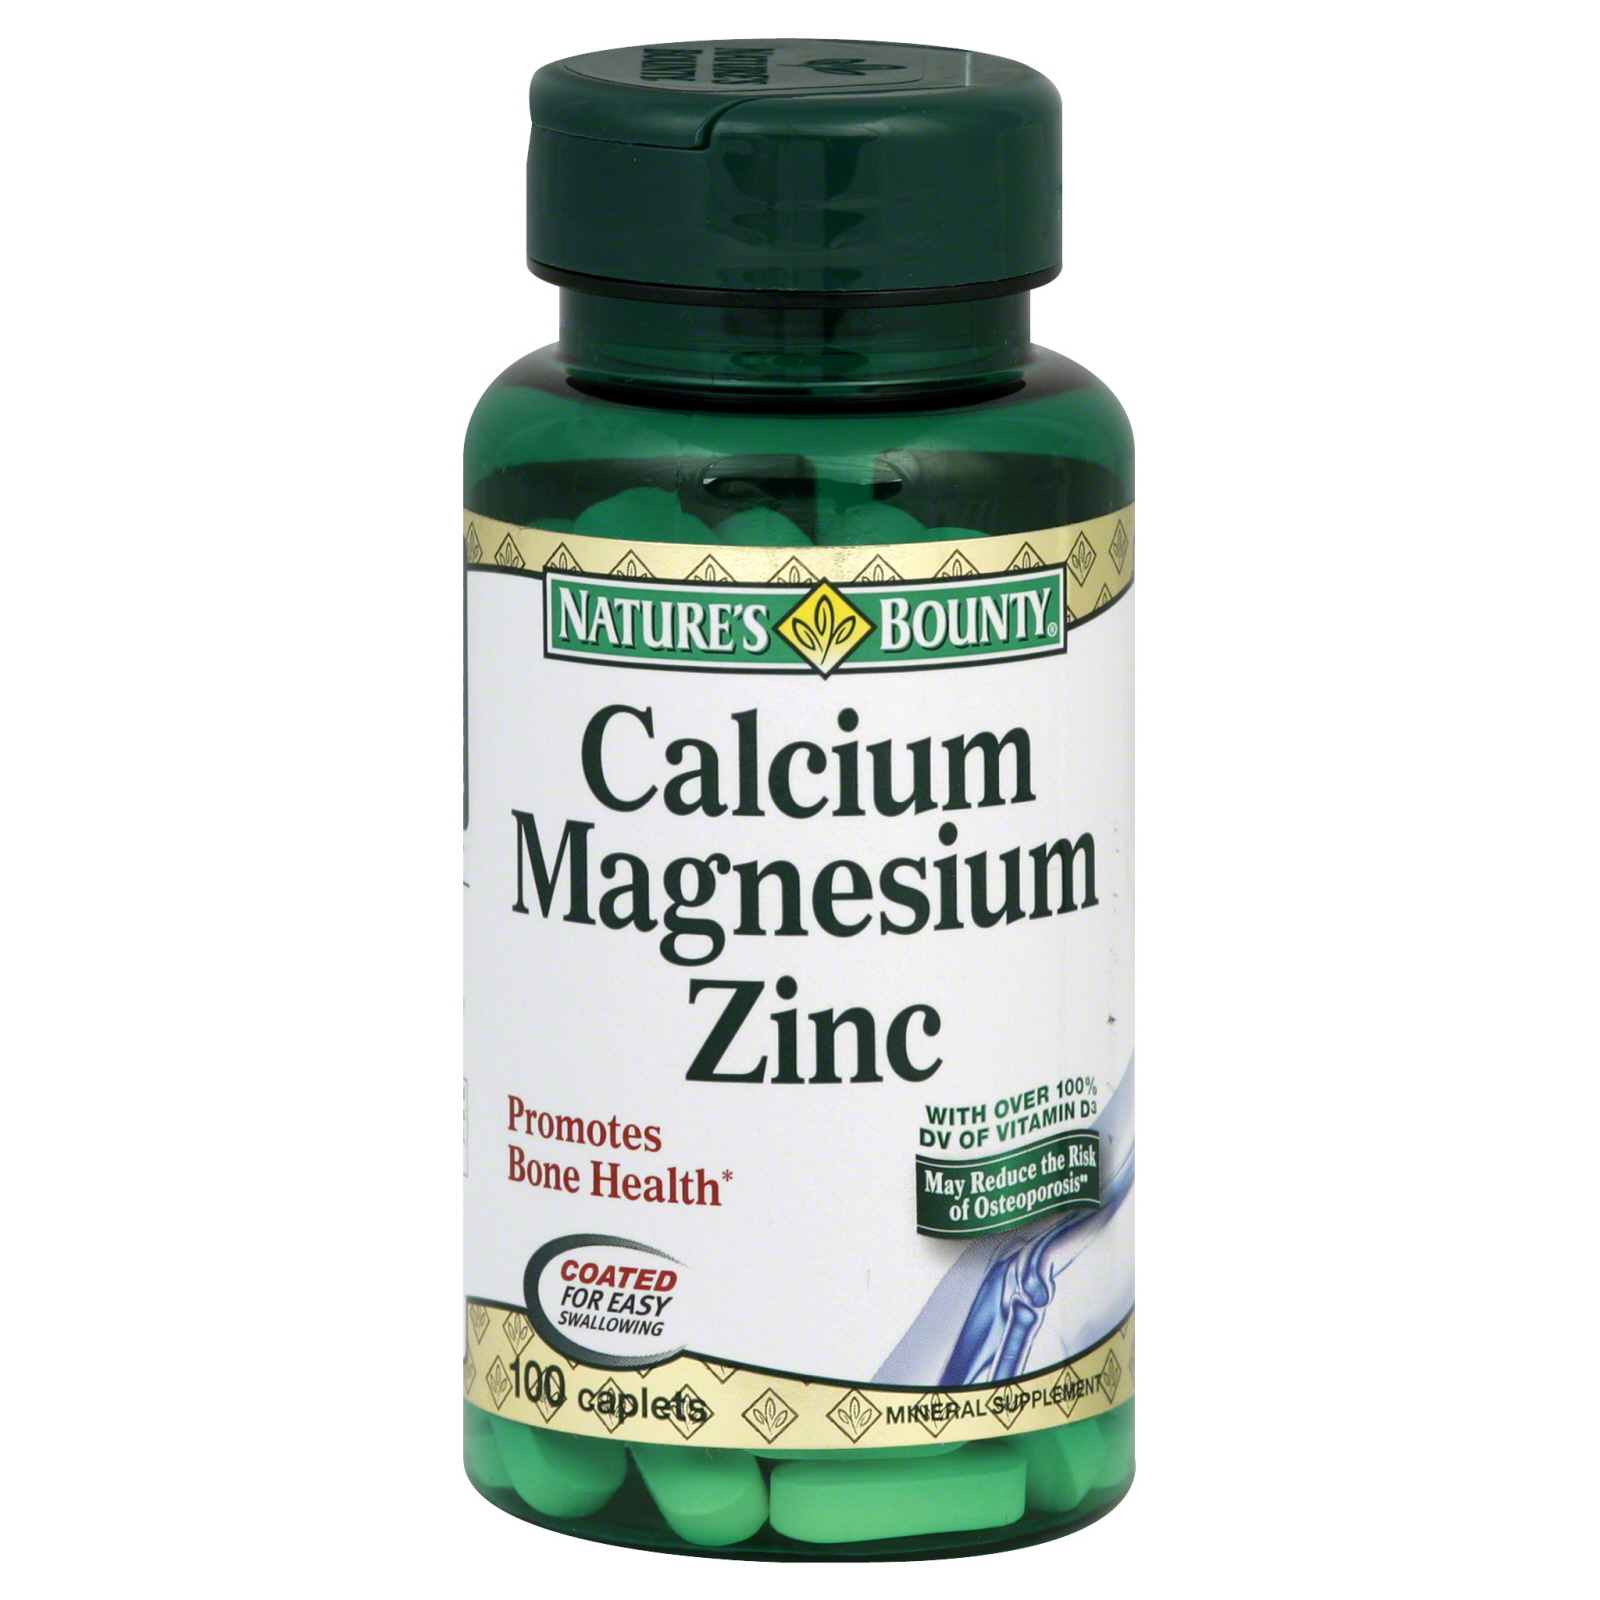 Nature's Bounty Calcium Magnesium Zinc, Caplets, 100 caplets